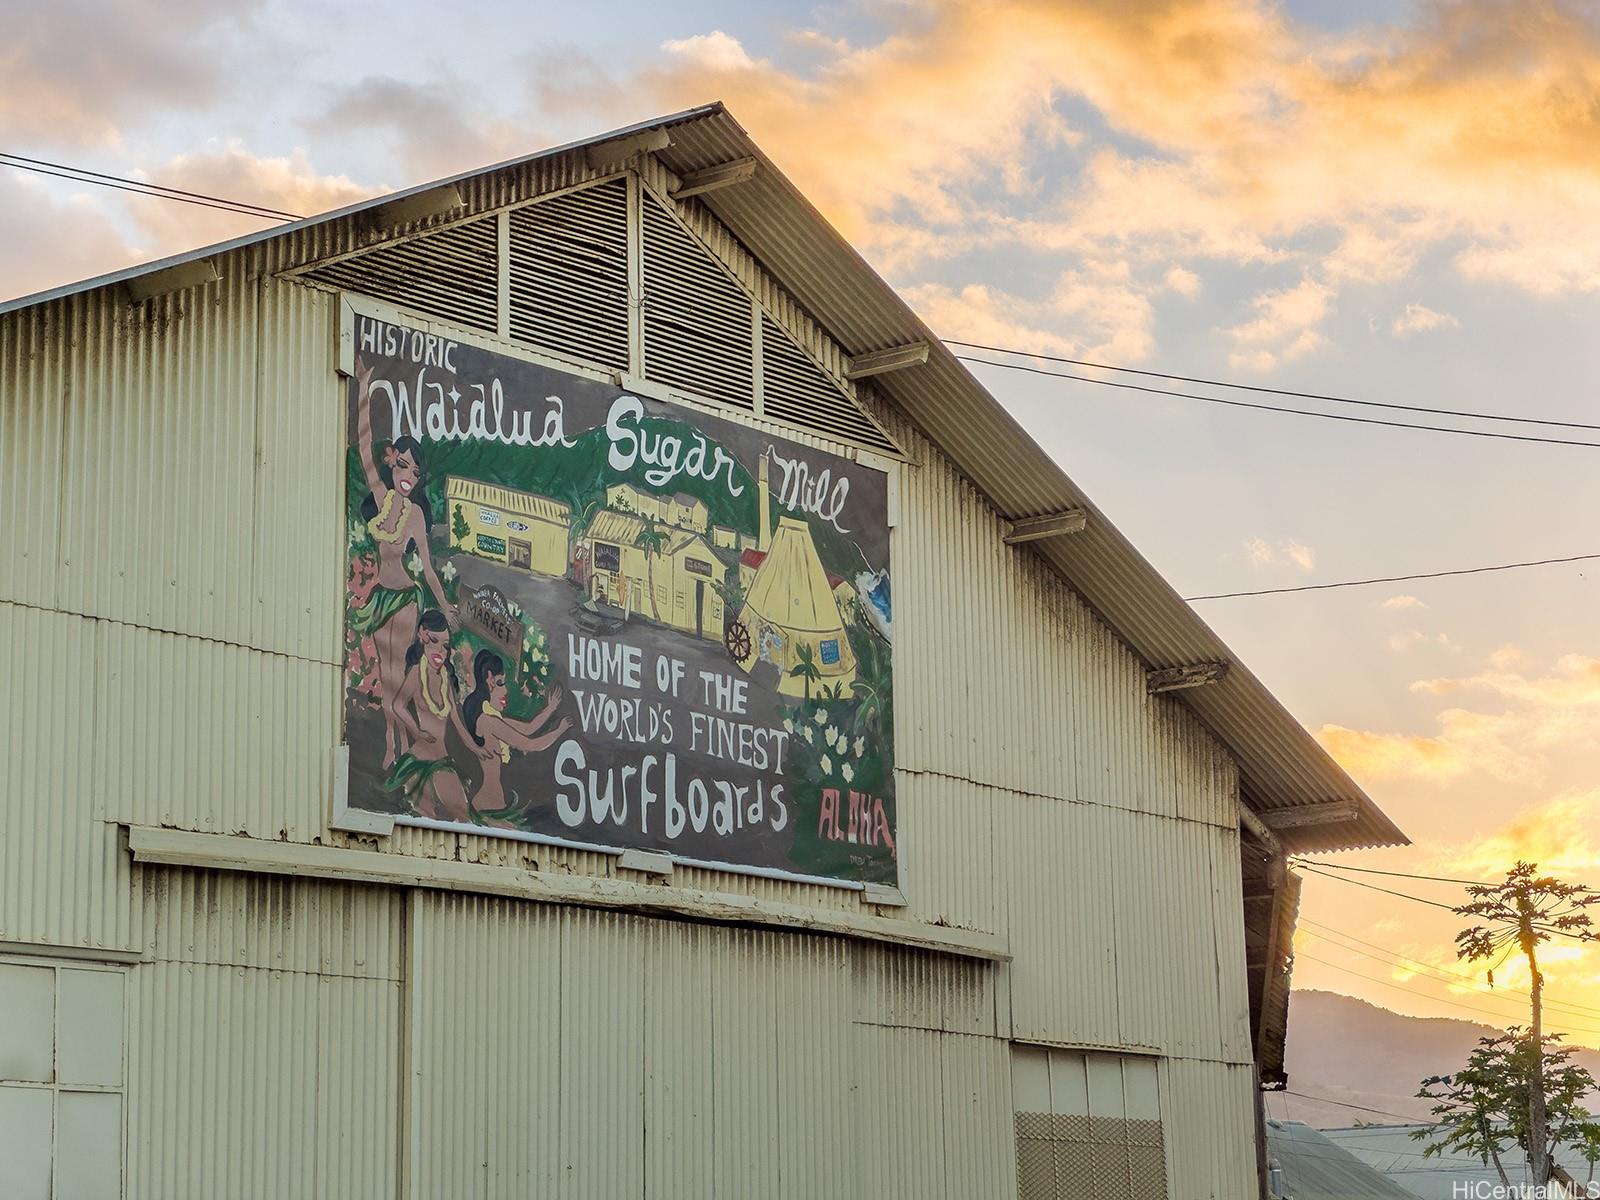 61-1121 Kaukonahua Road 3 Waialua, Hi vacant land for sale - photo 16 of 25